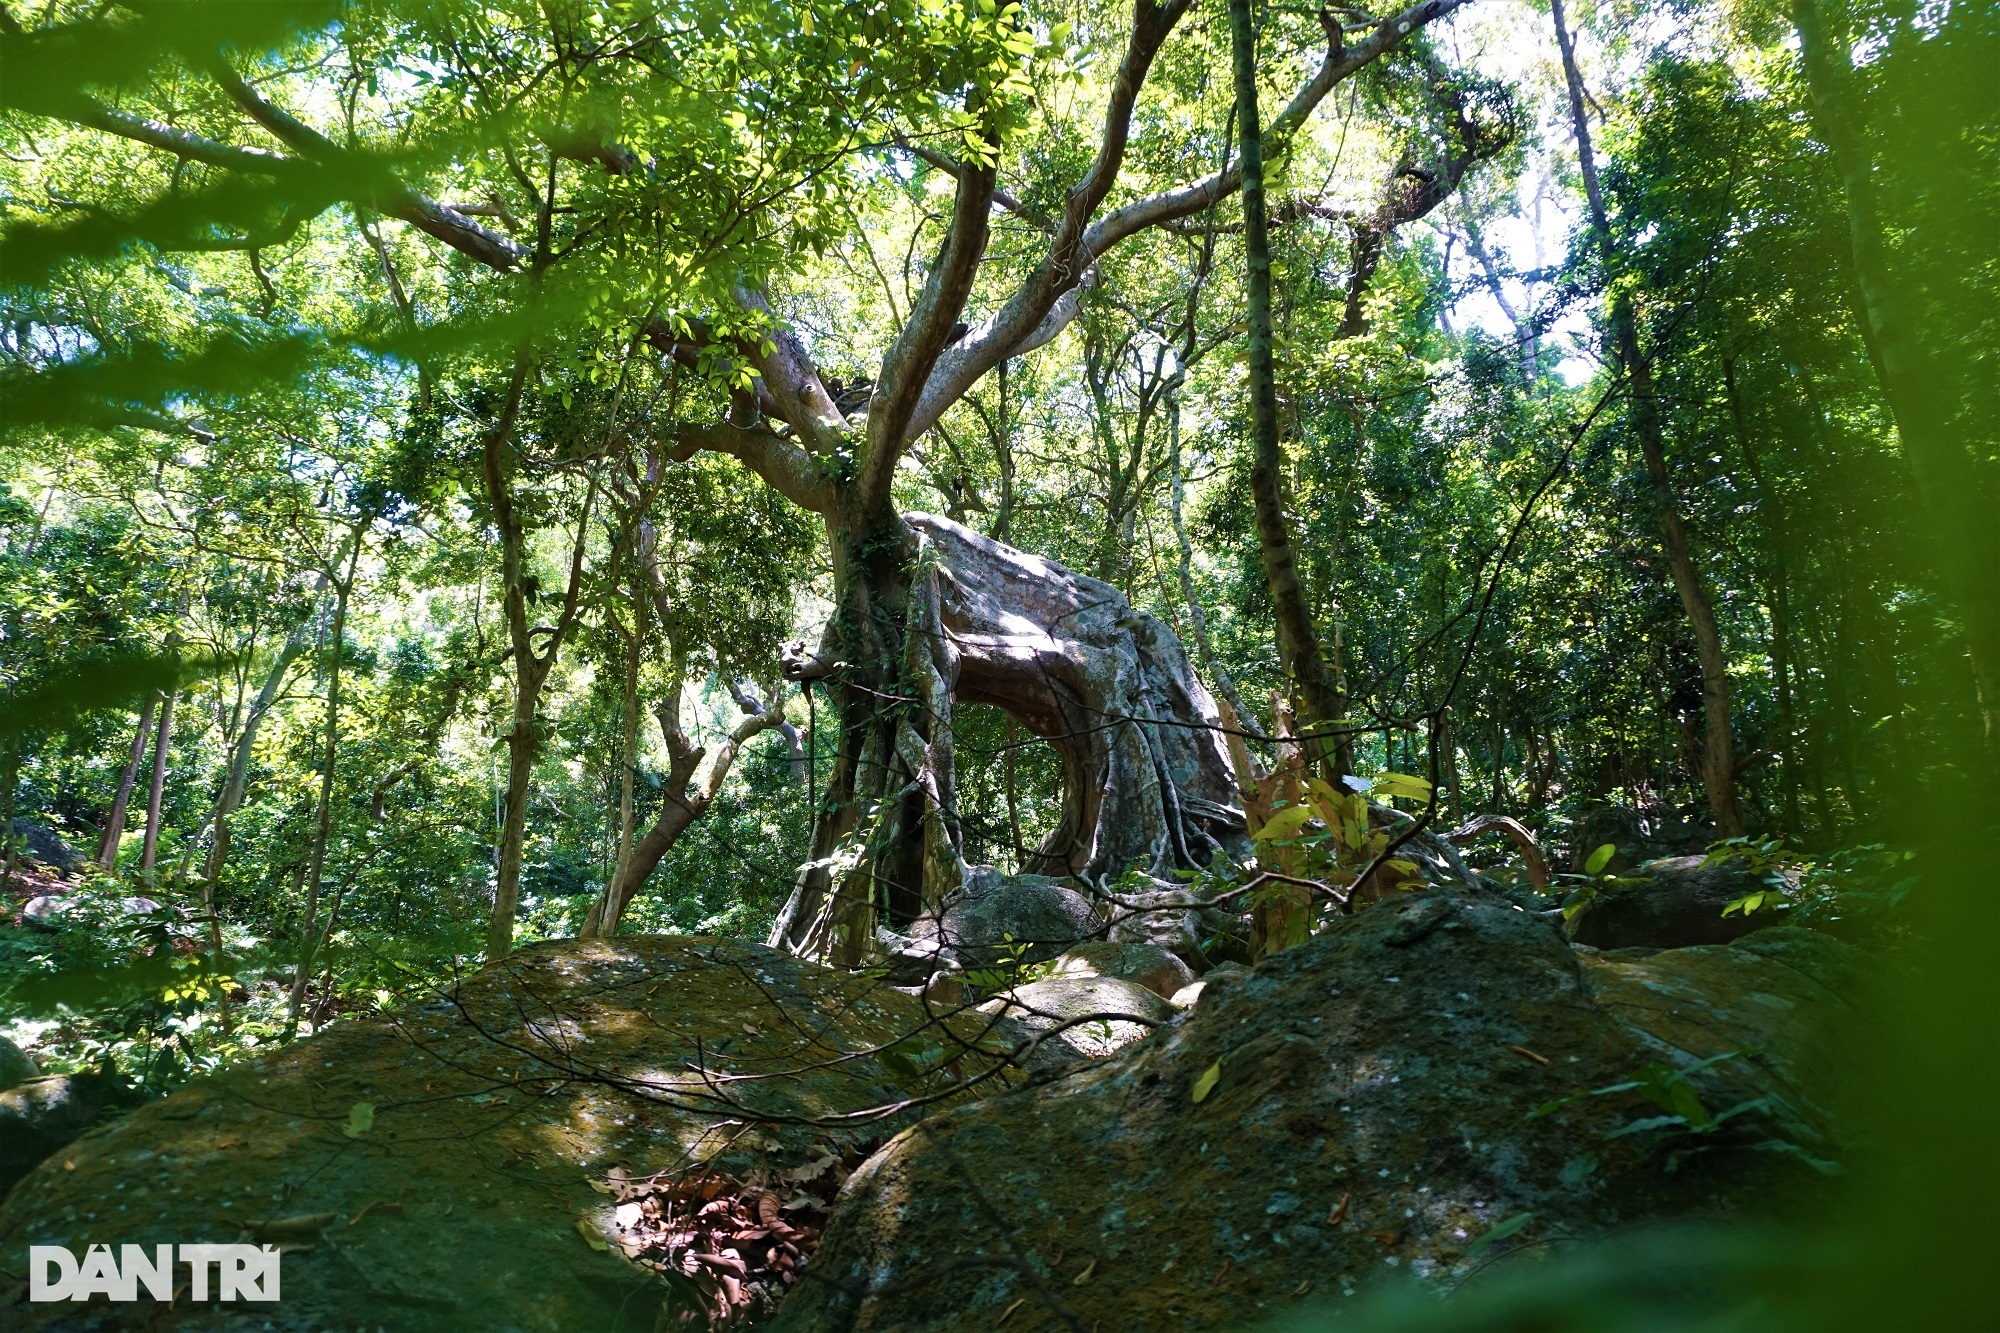 Cây đa ngơ ngác là biểu tượng của sự vững chắc và độc đáo trong văn hóa Việt Nam. Hình ảnh cây đa sẽ khiến bạn cảm thấy bất ngờ và thích thú. Hãy đón xem hình ảnh về cây đa ngơ ngác để khám phá sự đặc biệt của nó!